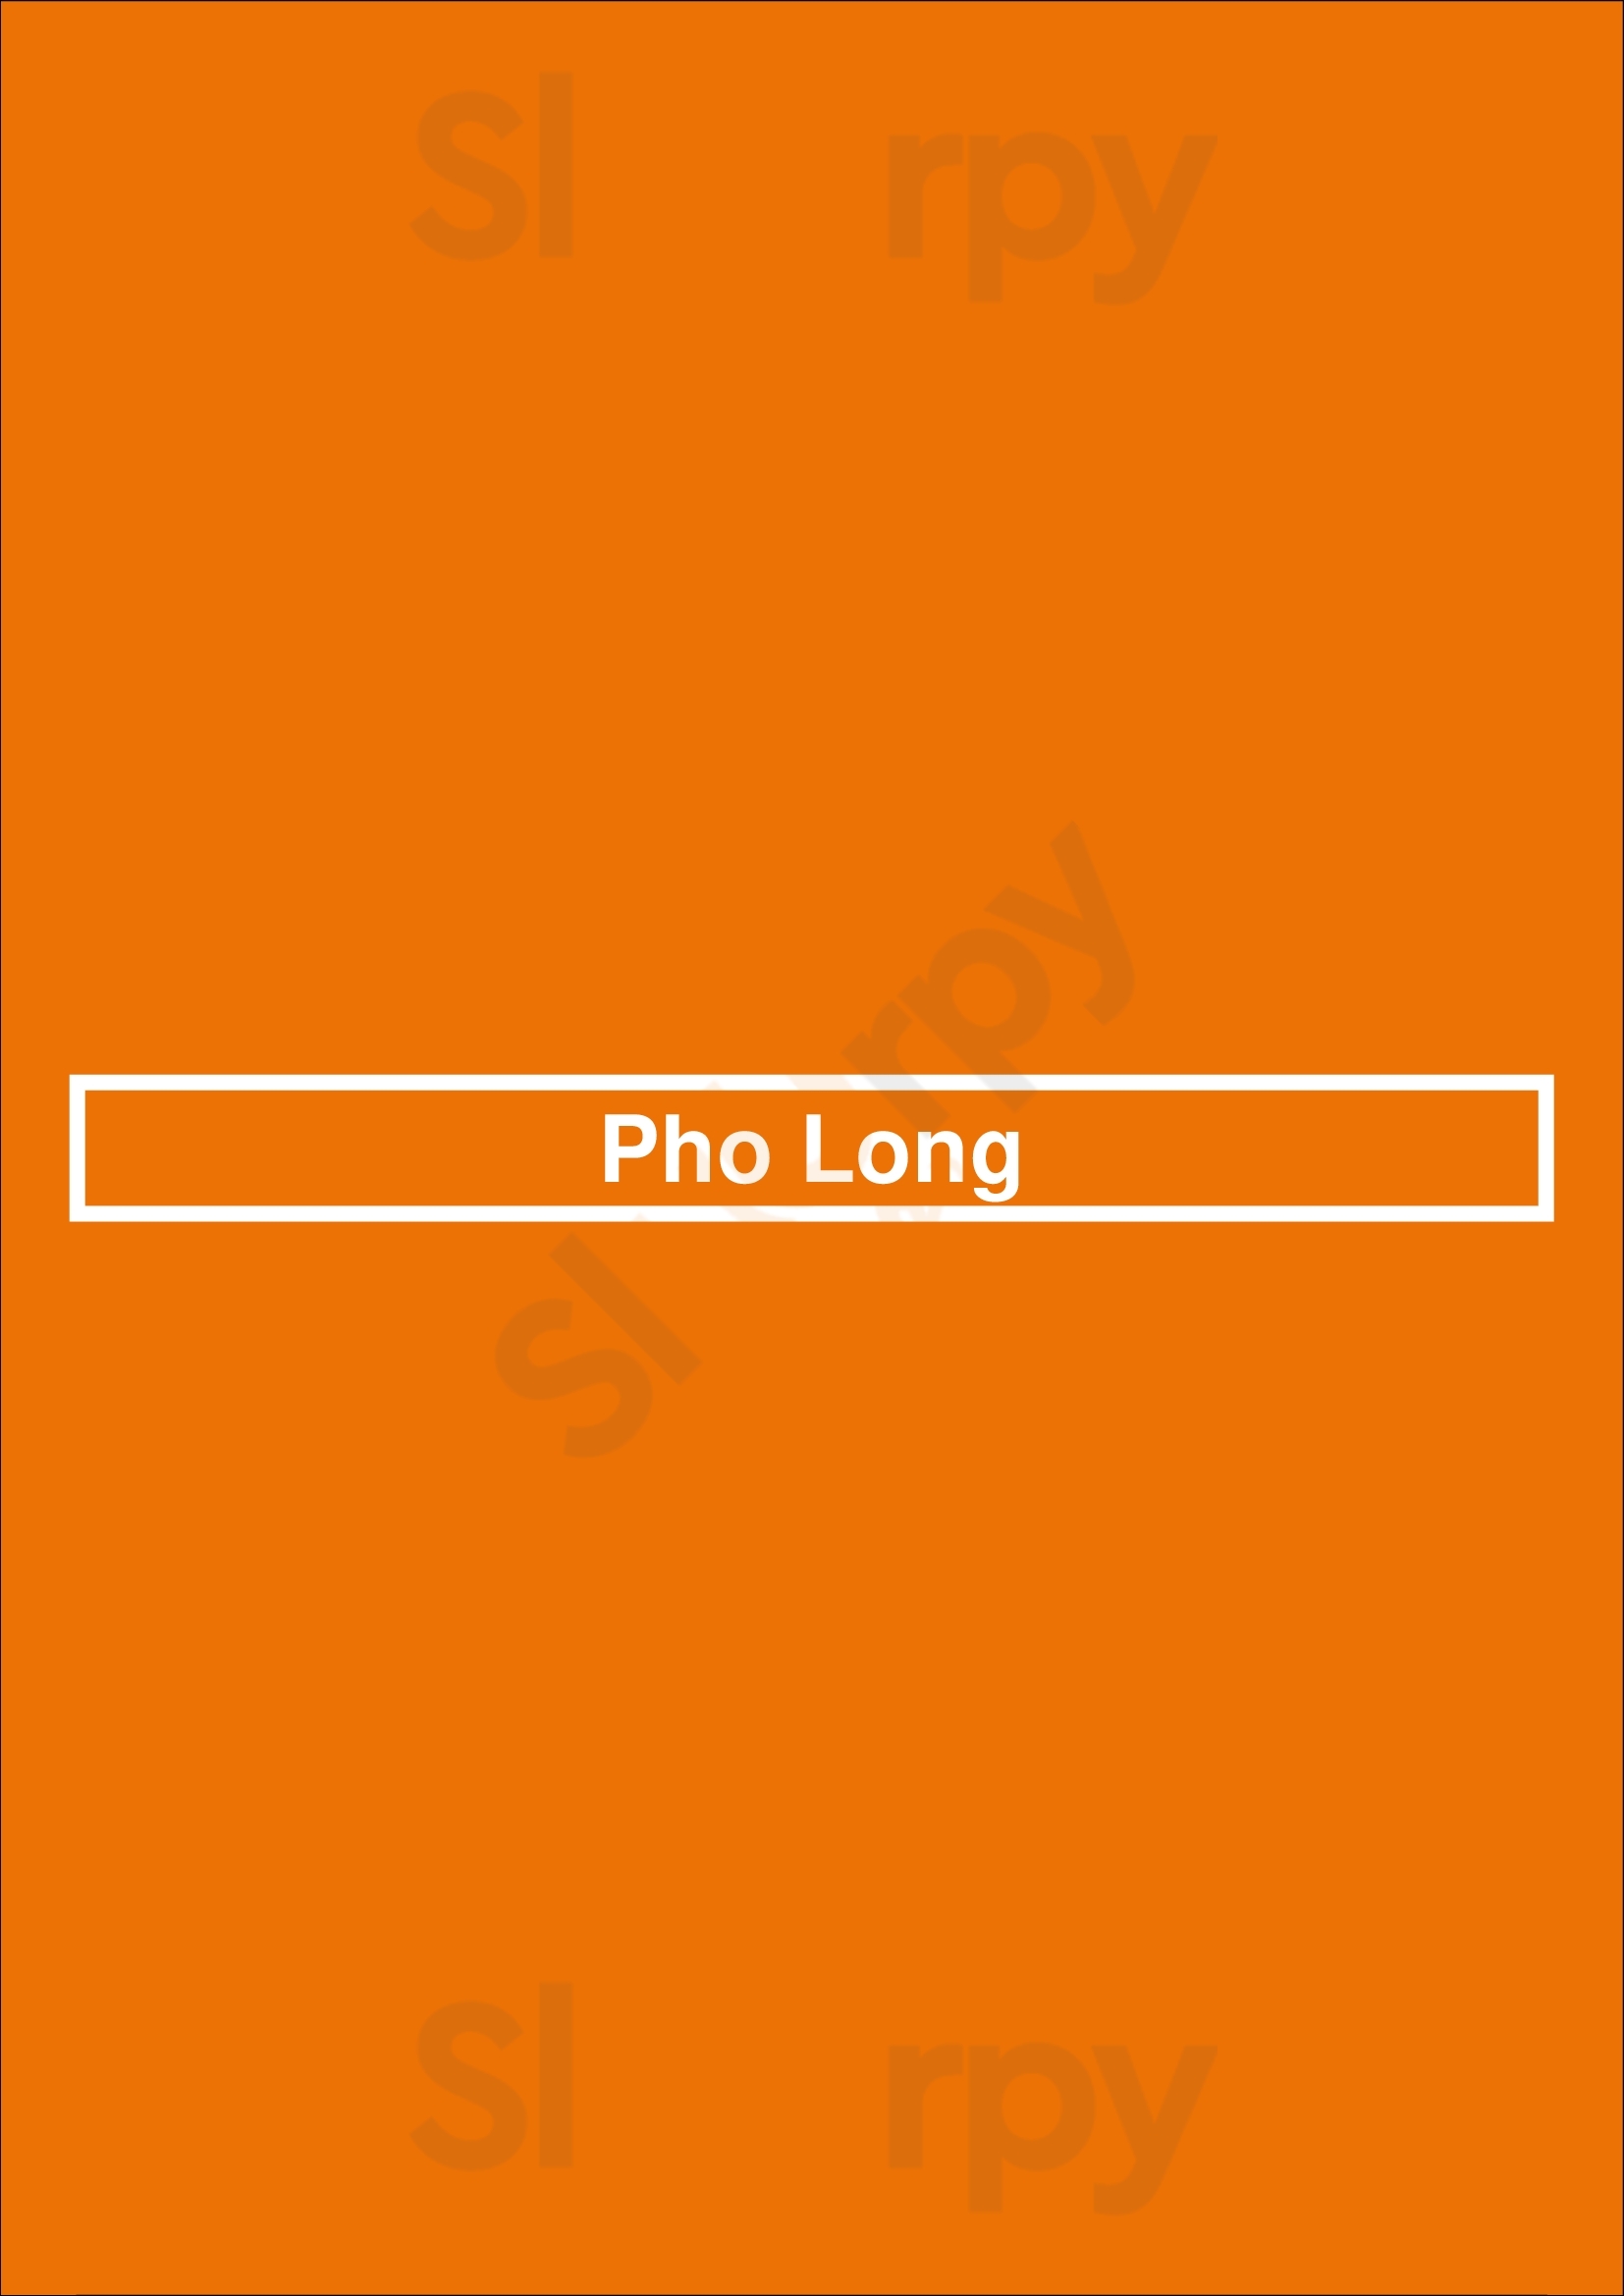 Pho Long Houston Menu - 1